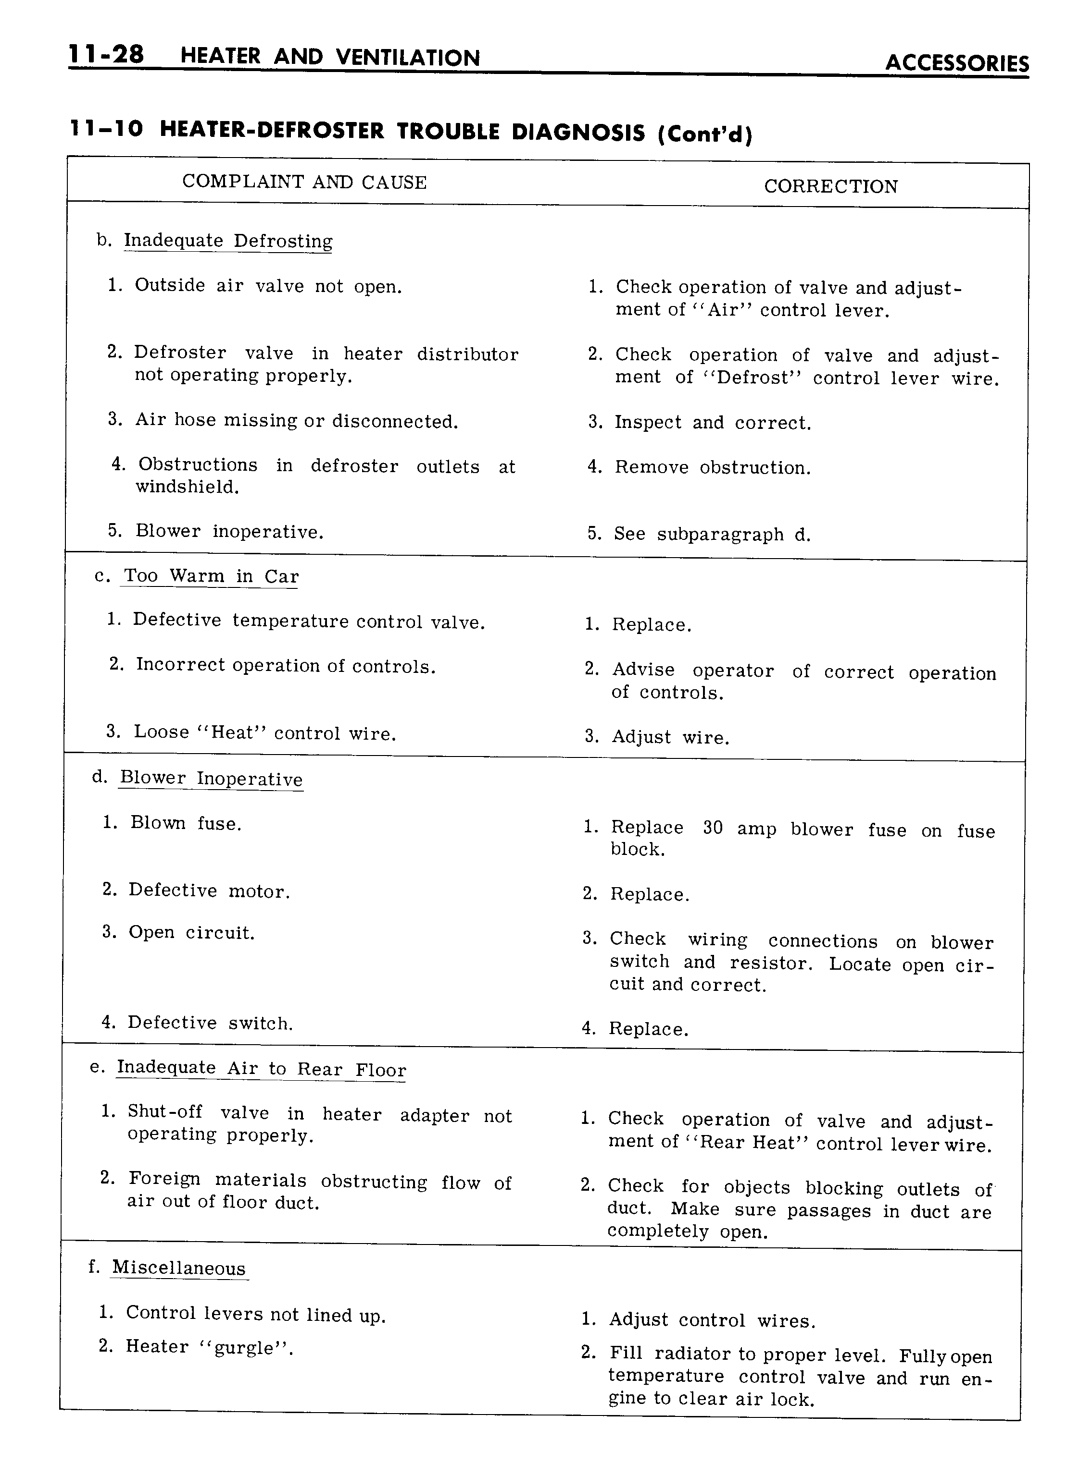 n_11 1961 Buick Shop Manual - Accessories-028-028.jpg